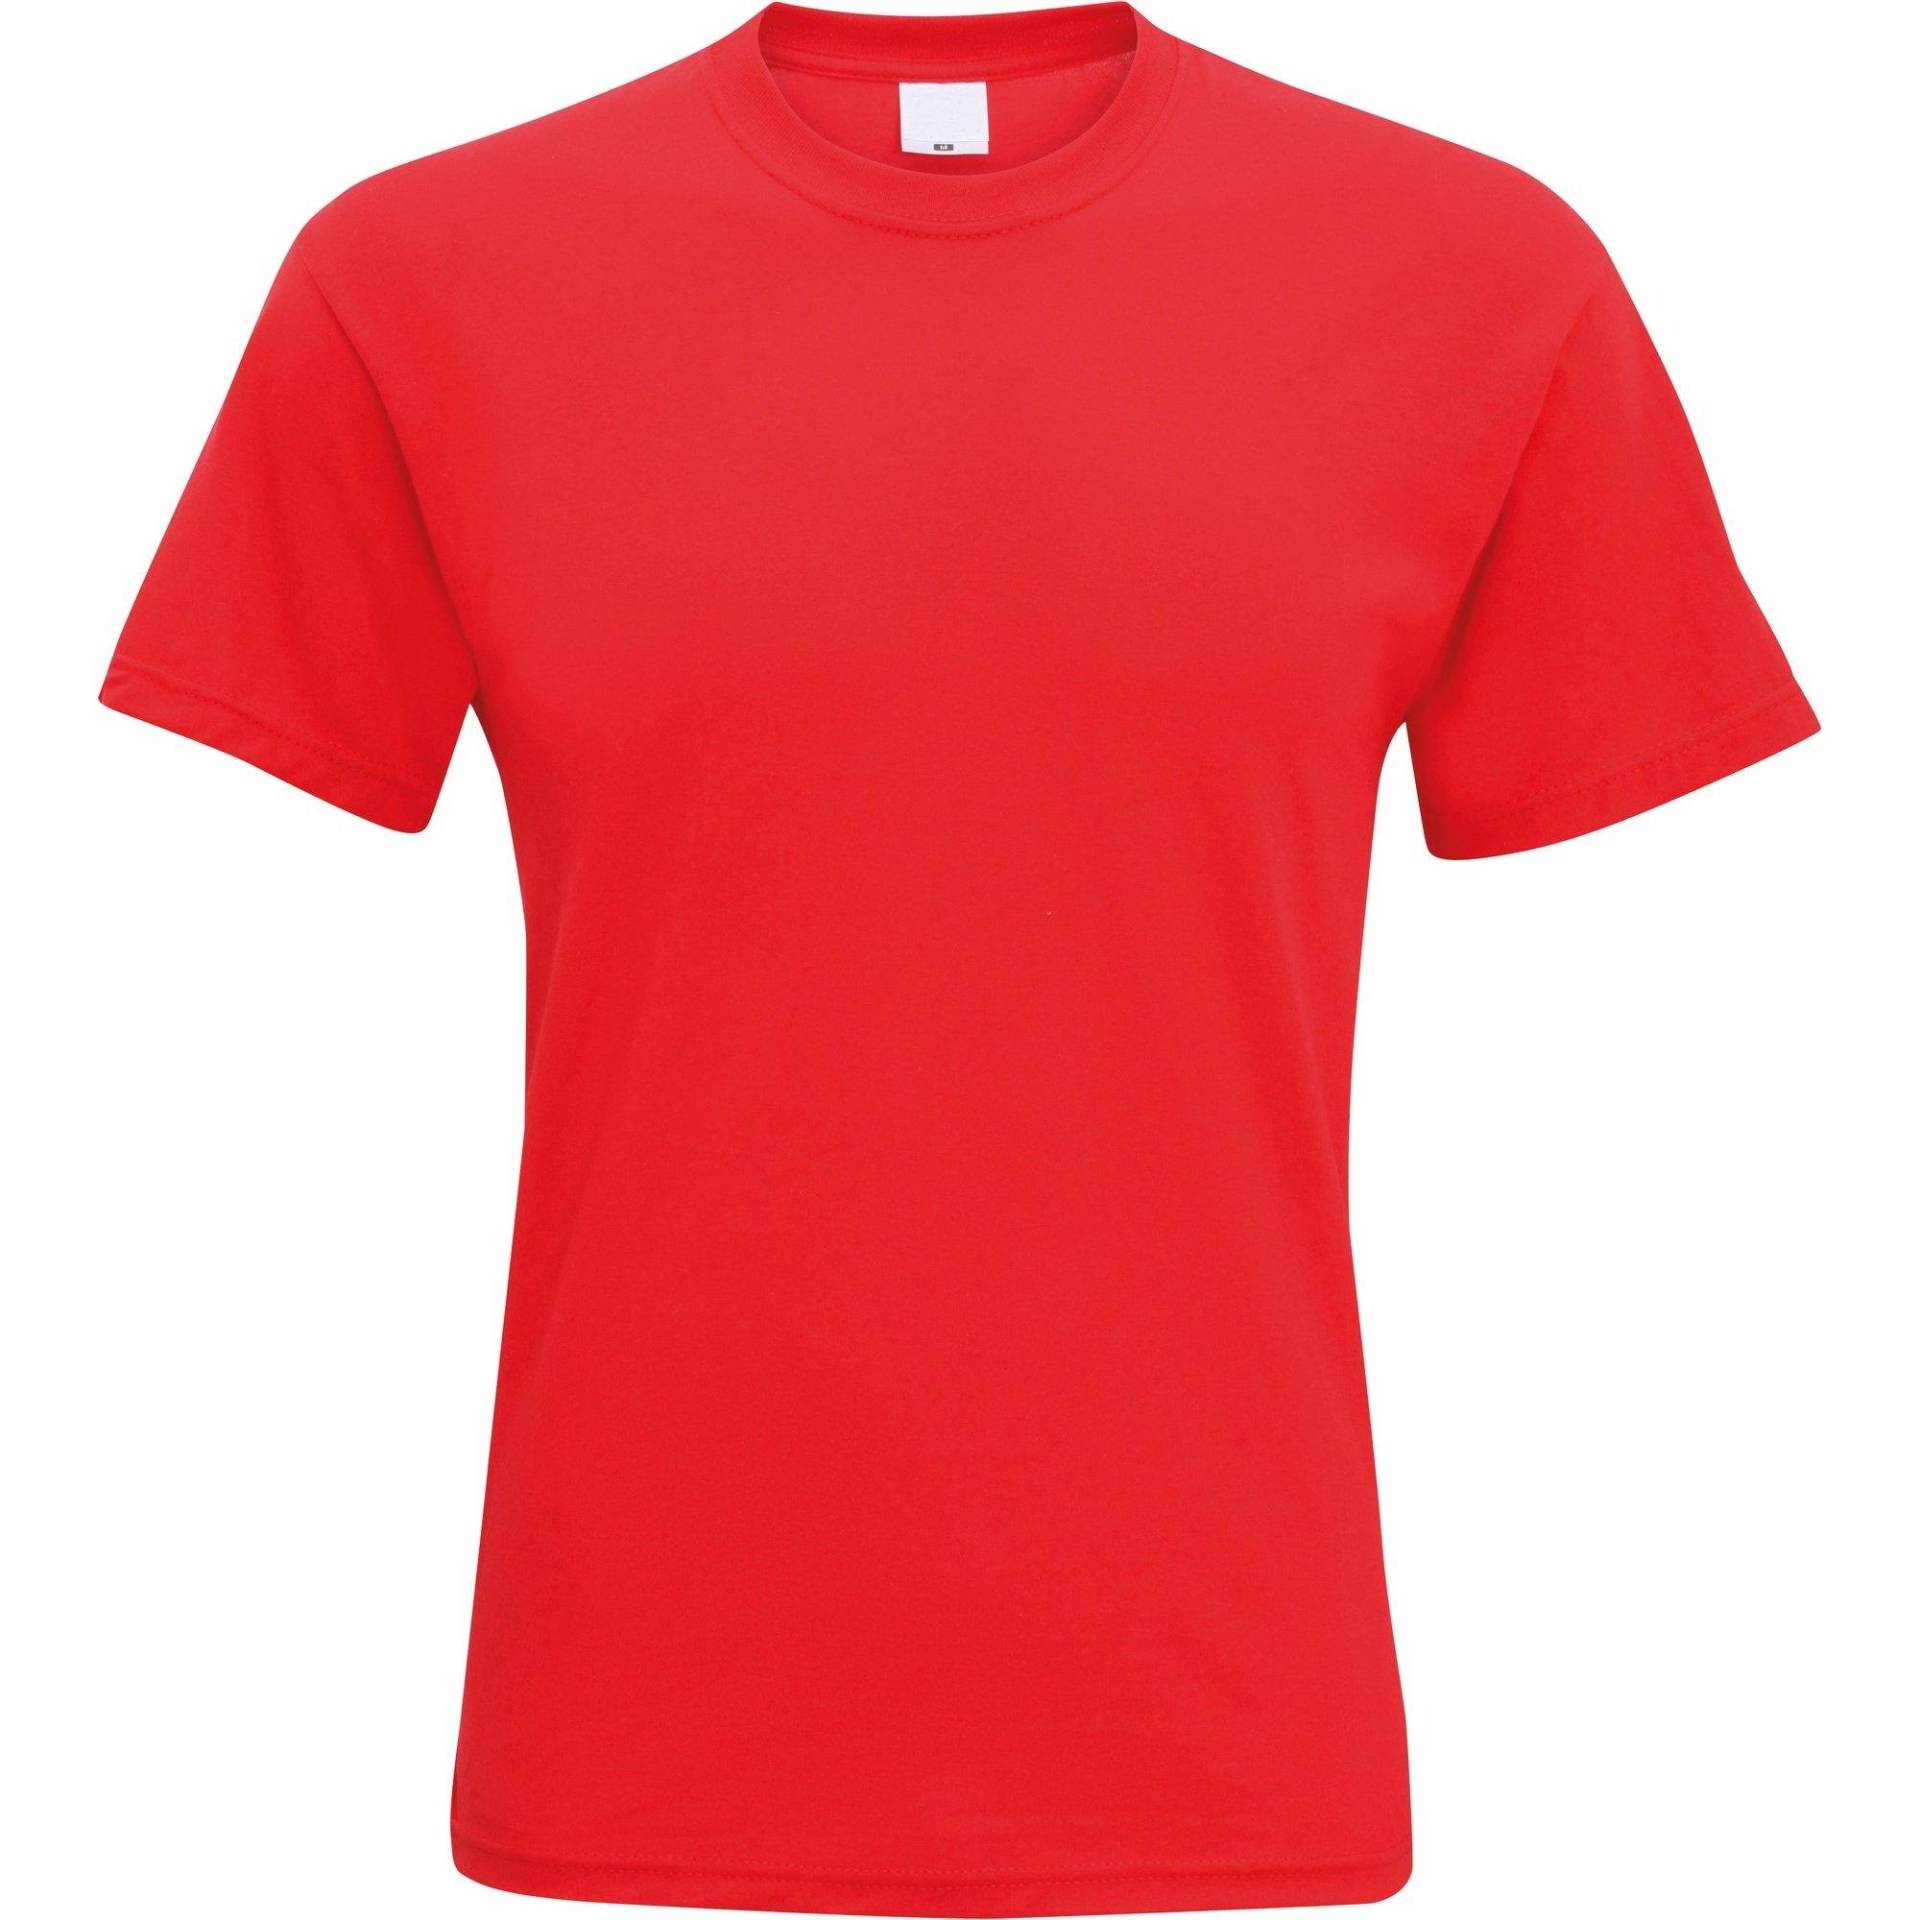 Kurzarm Freizeit Tshirt Herren Rot Bunt M von Universal Textiles